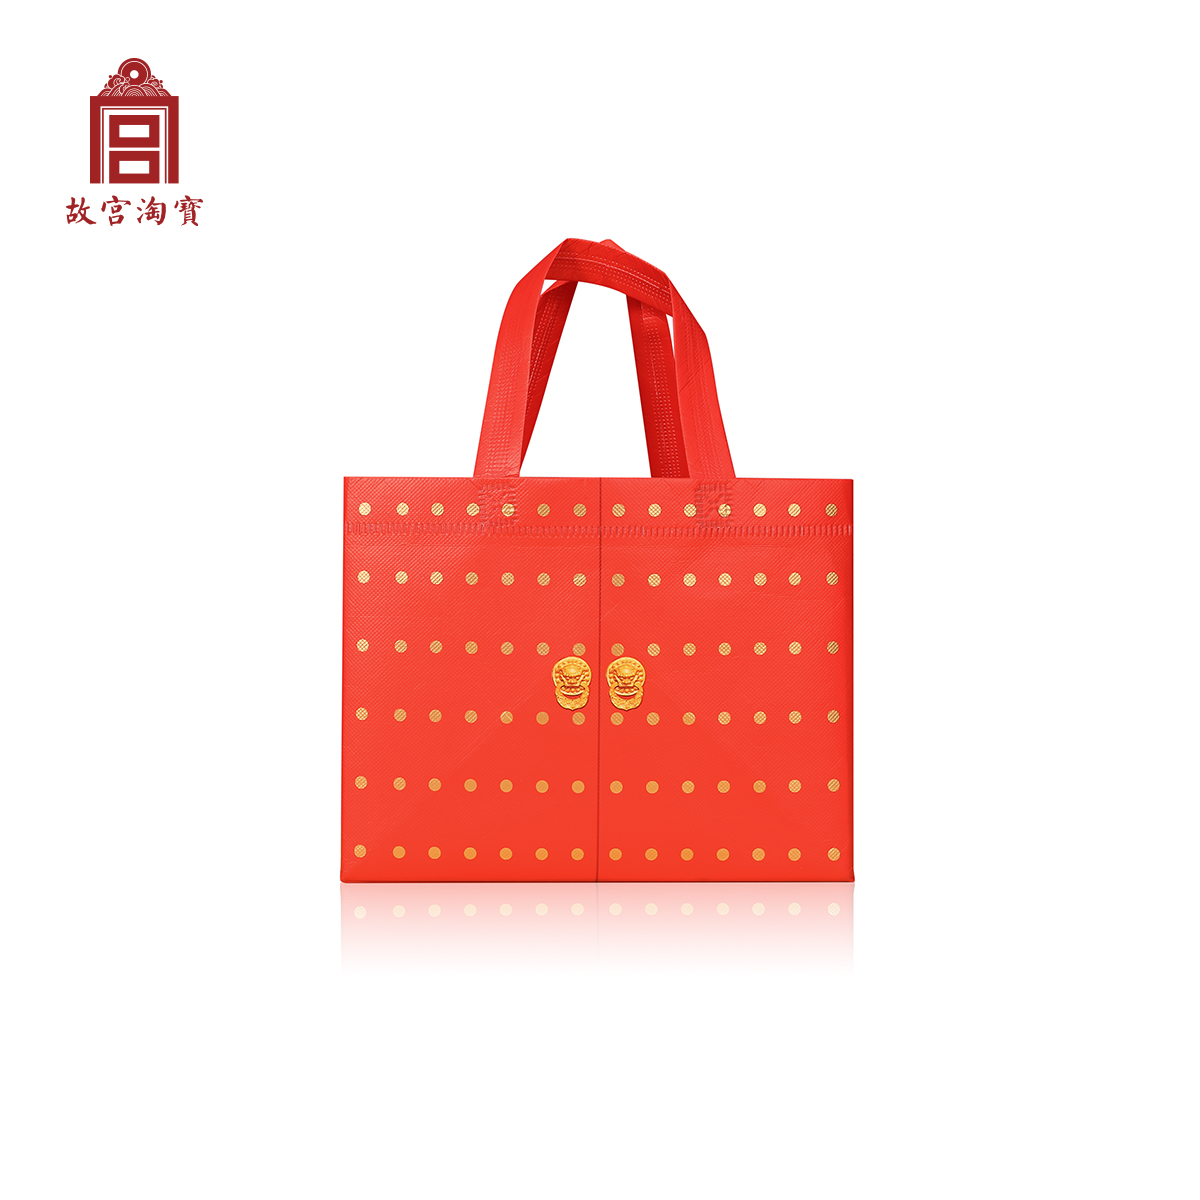 故宮博物院專用無紡布手提袋 環保袋 紀念品禮品袋 (8.3折)